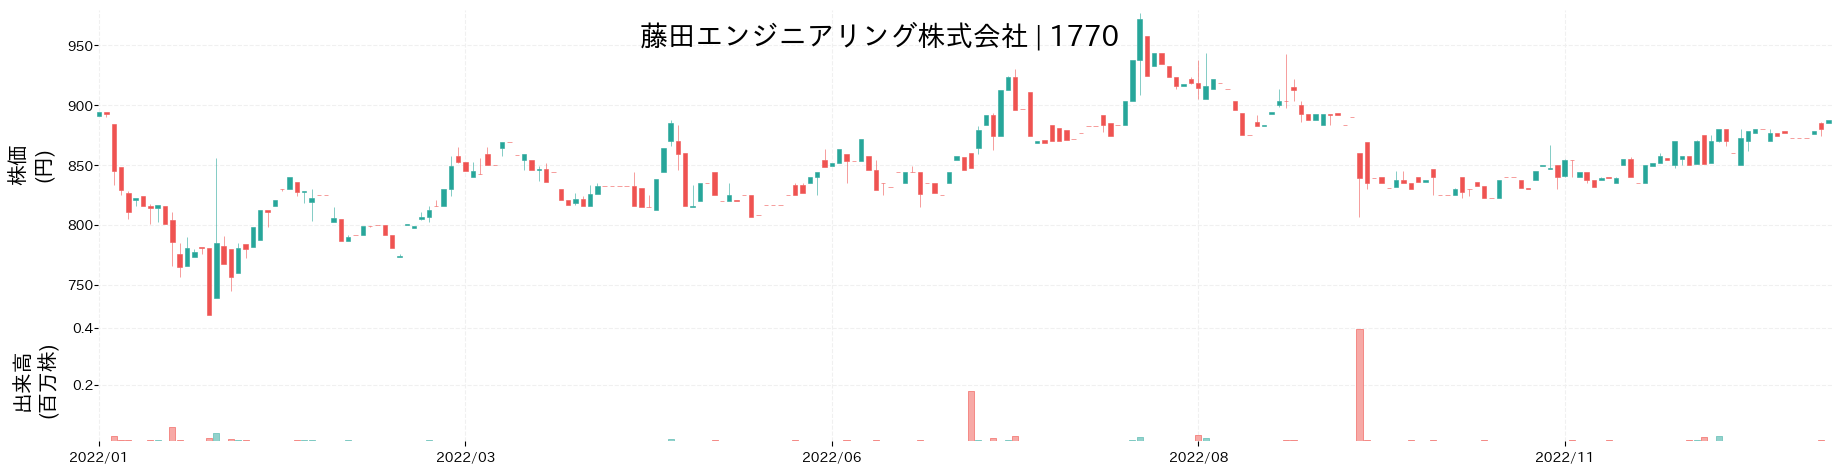 藤田エンジニアリングの株価推移(2022)